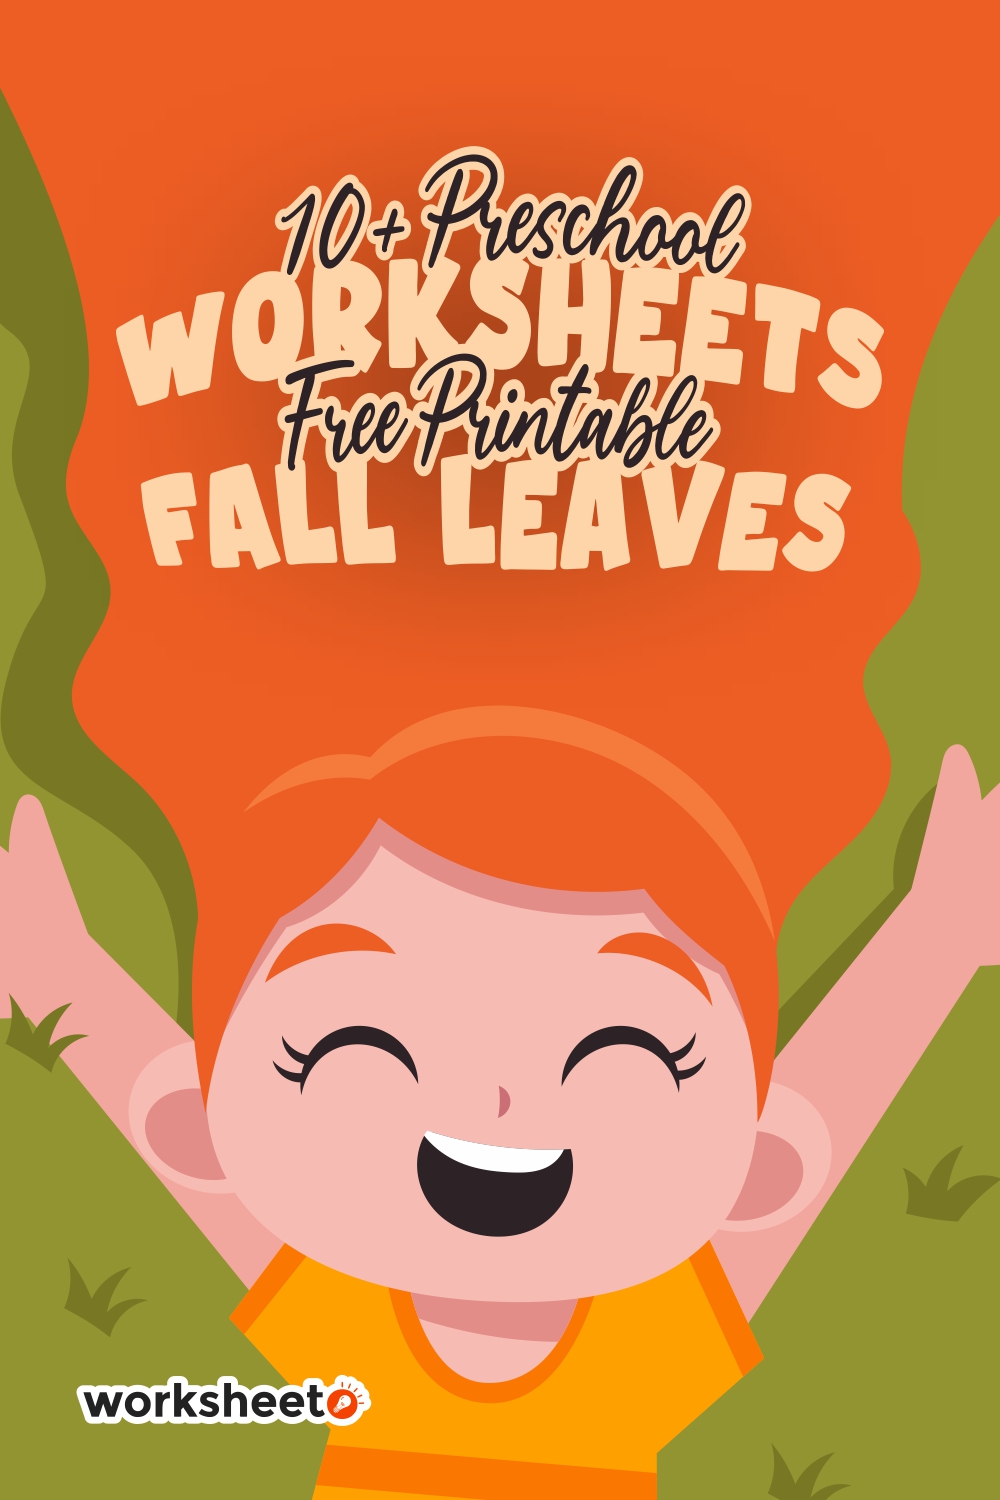 11-preschool-worksheets-free-printable-fall-leaves-worksheeto